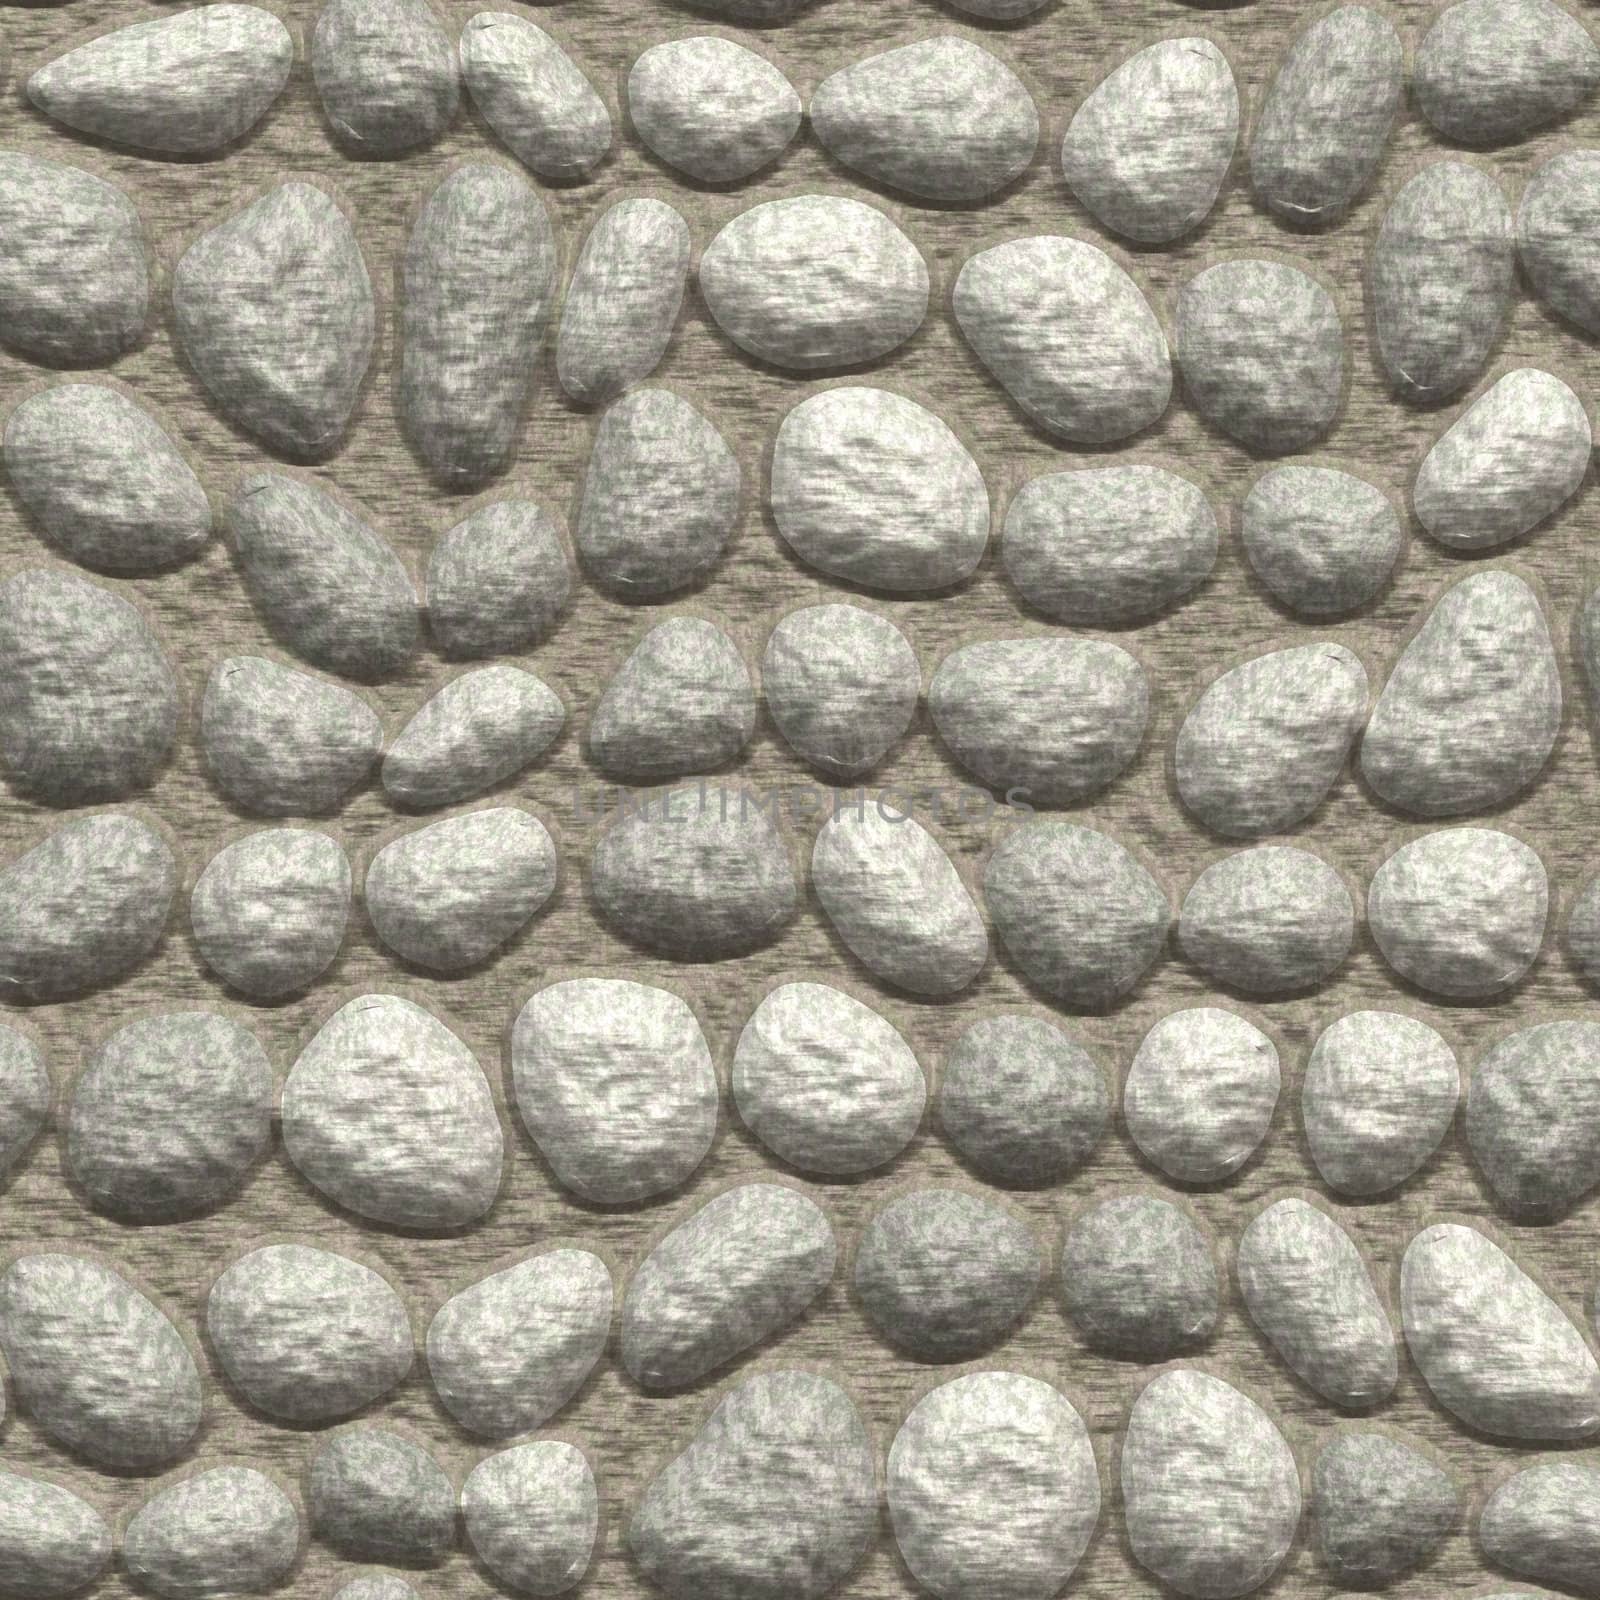 Pavement grey pebble by Nanisimova